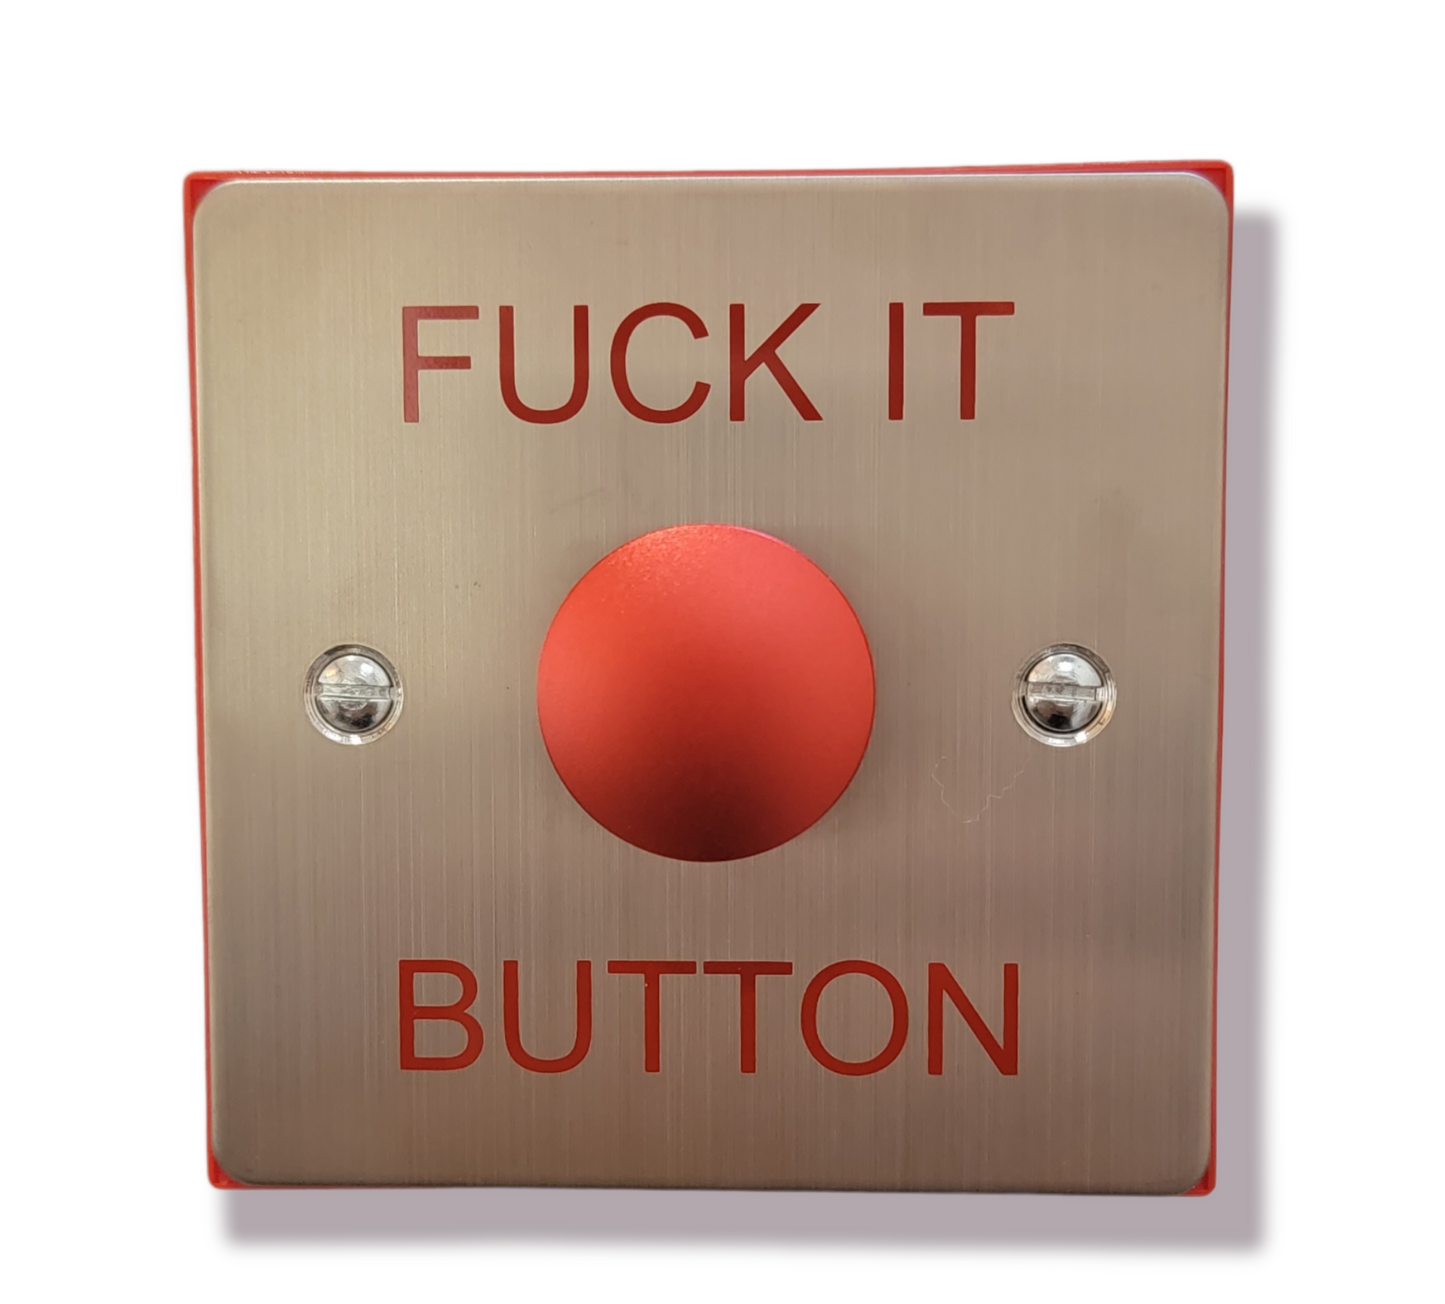 "Fuck it Button"